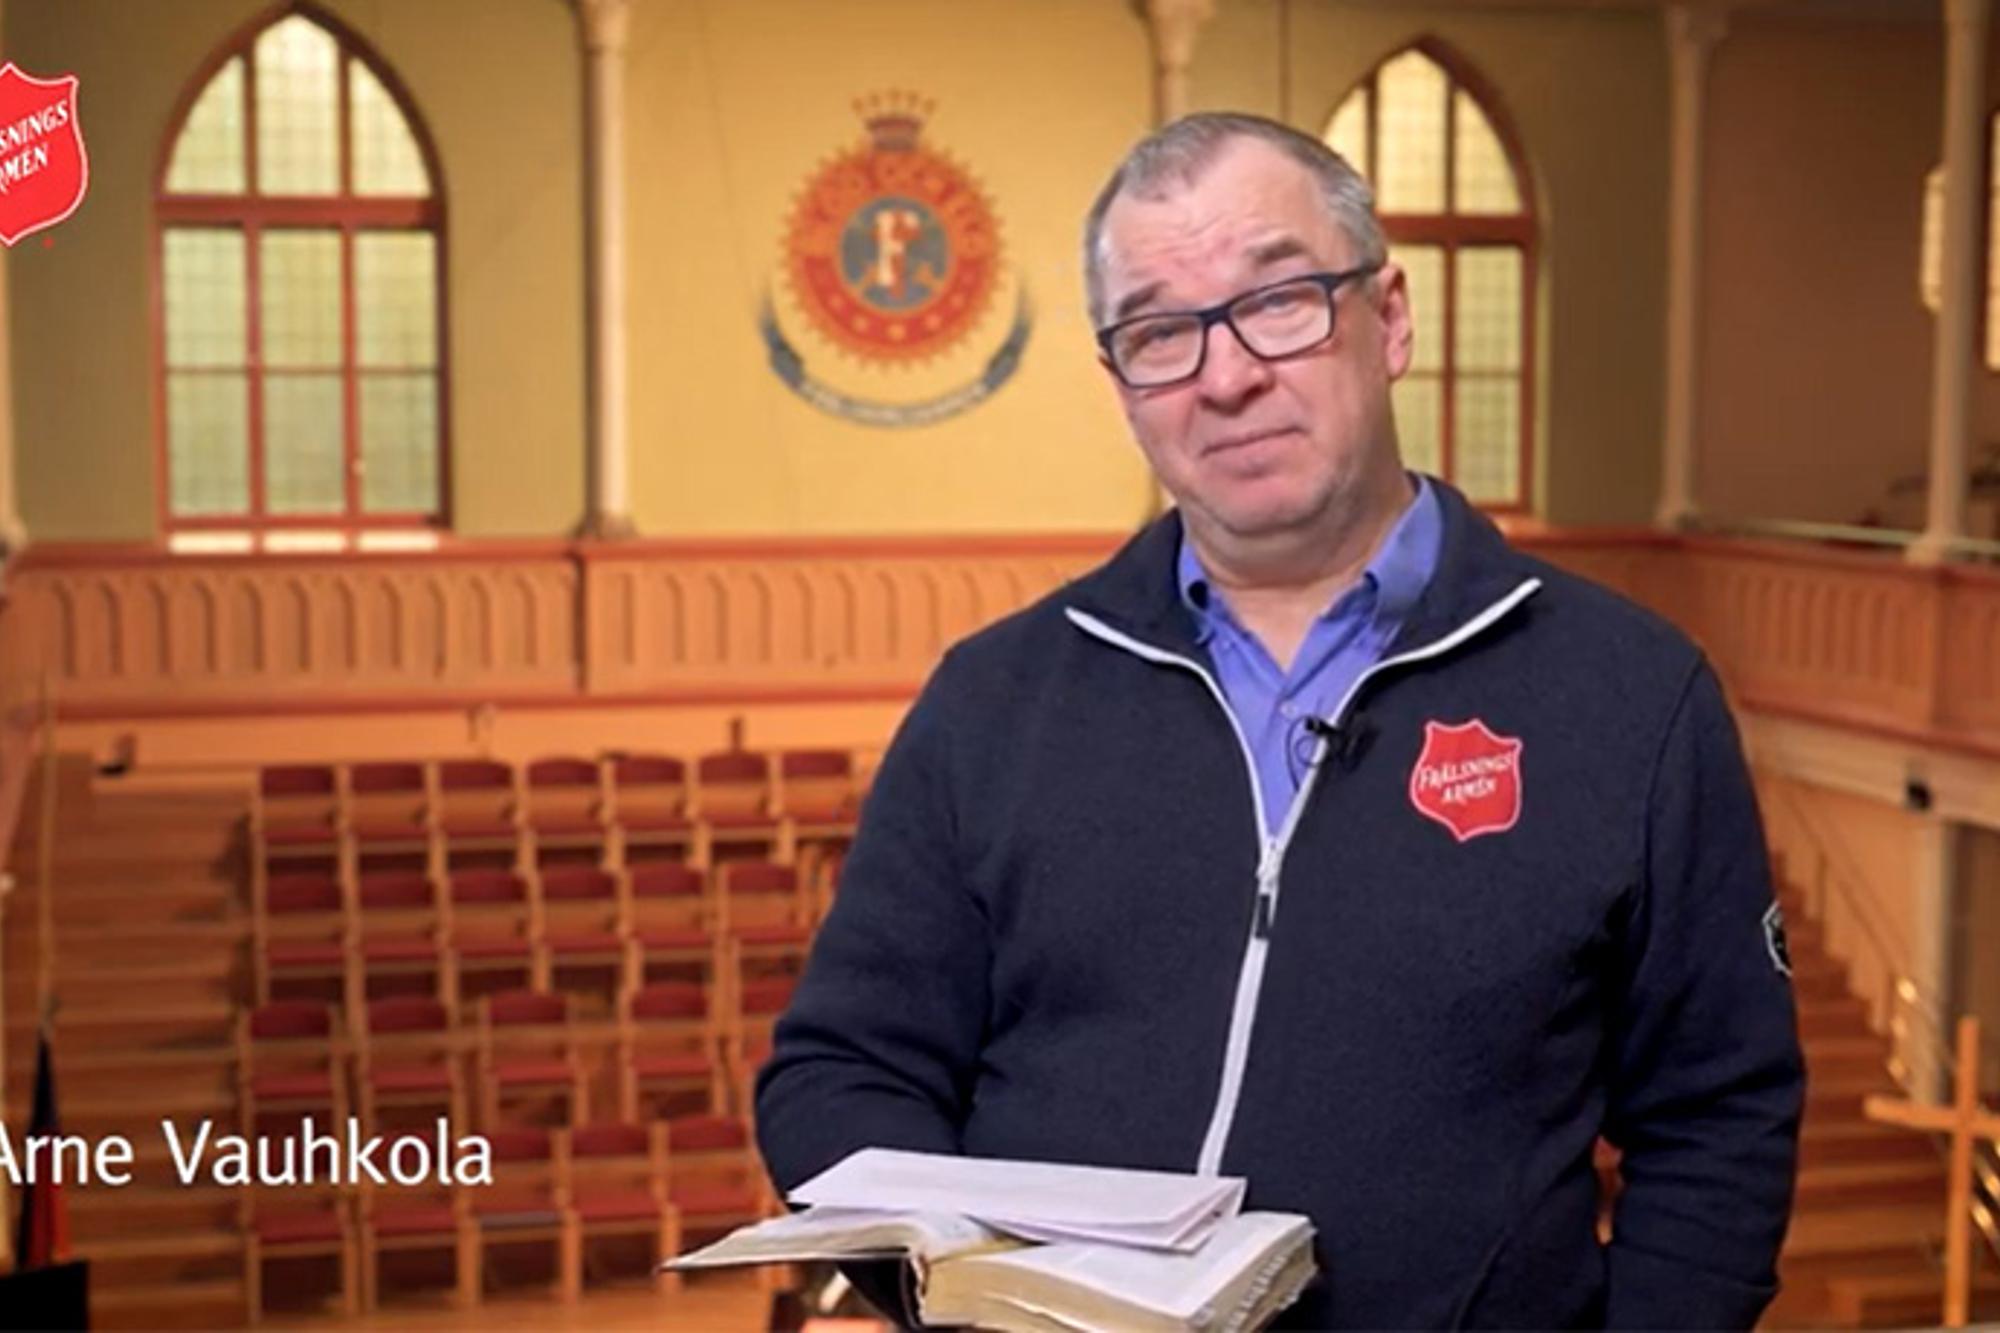 Arne Vauhkola står i en kyrka med en uppslagen bok i ena handen och blicken in i kameran.